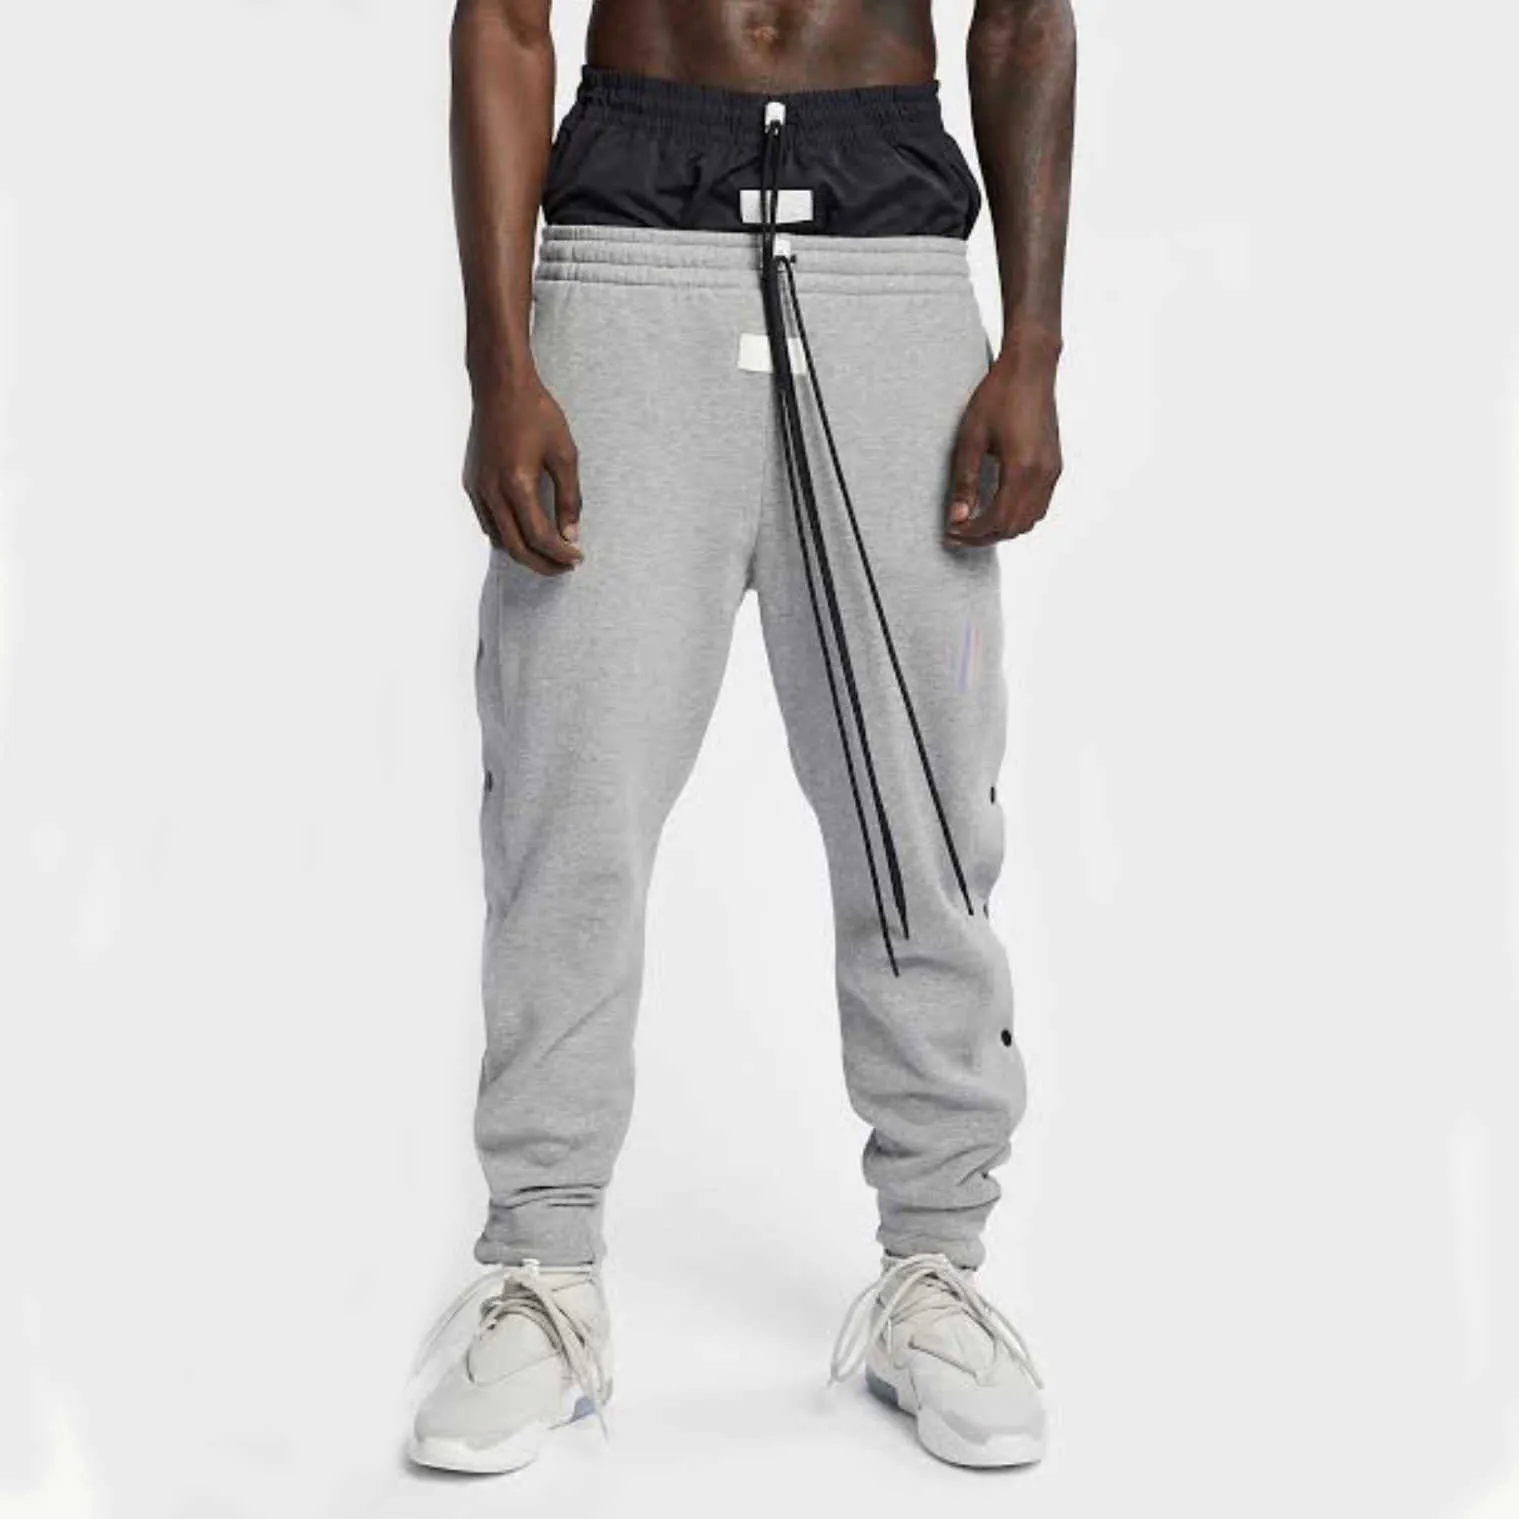 Mens Pants strearwear hip hop Pants Side button Sweatpants Casual sports trousers Streetwear